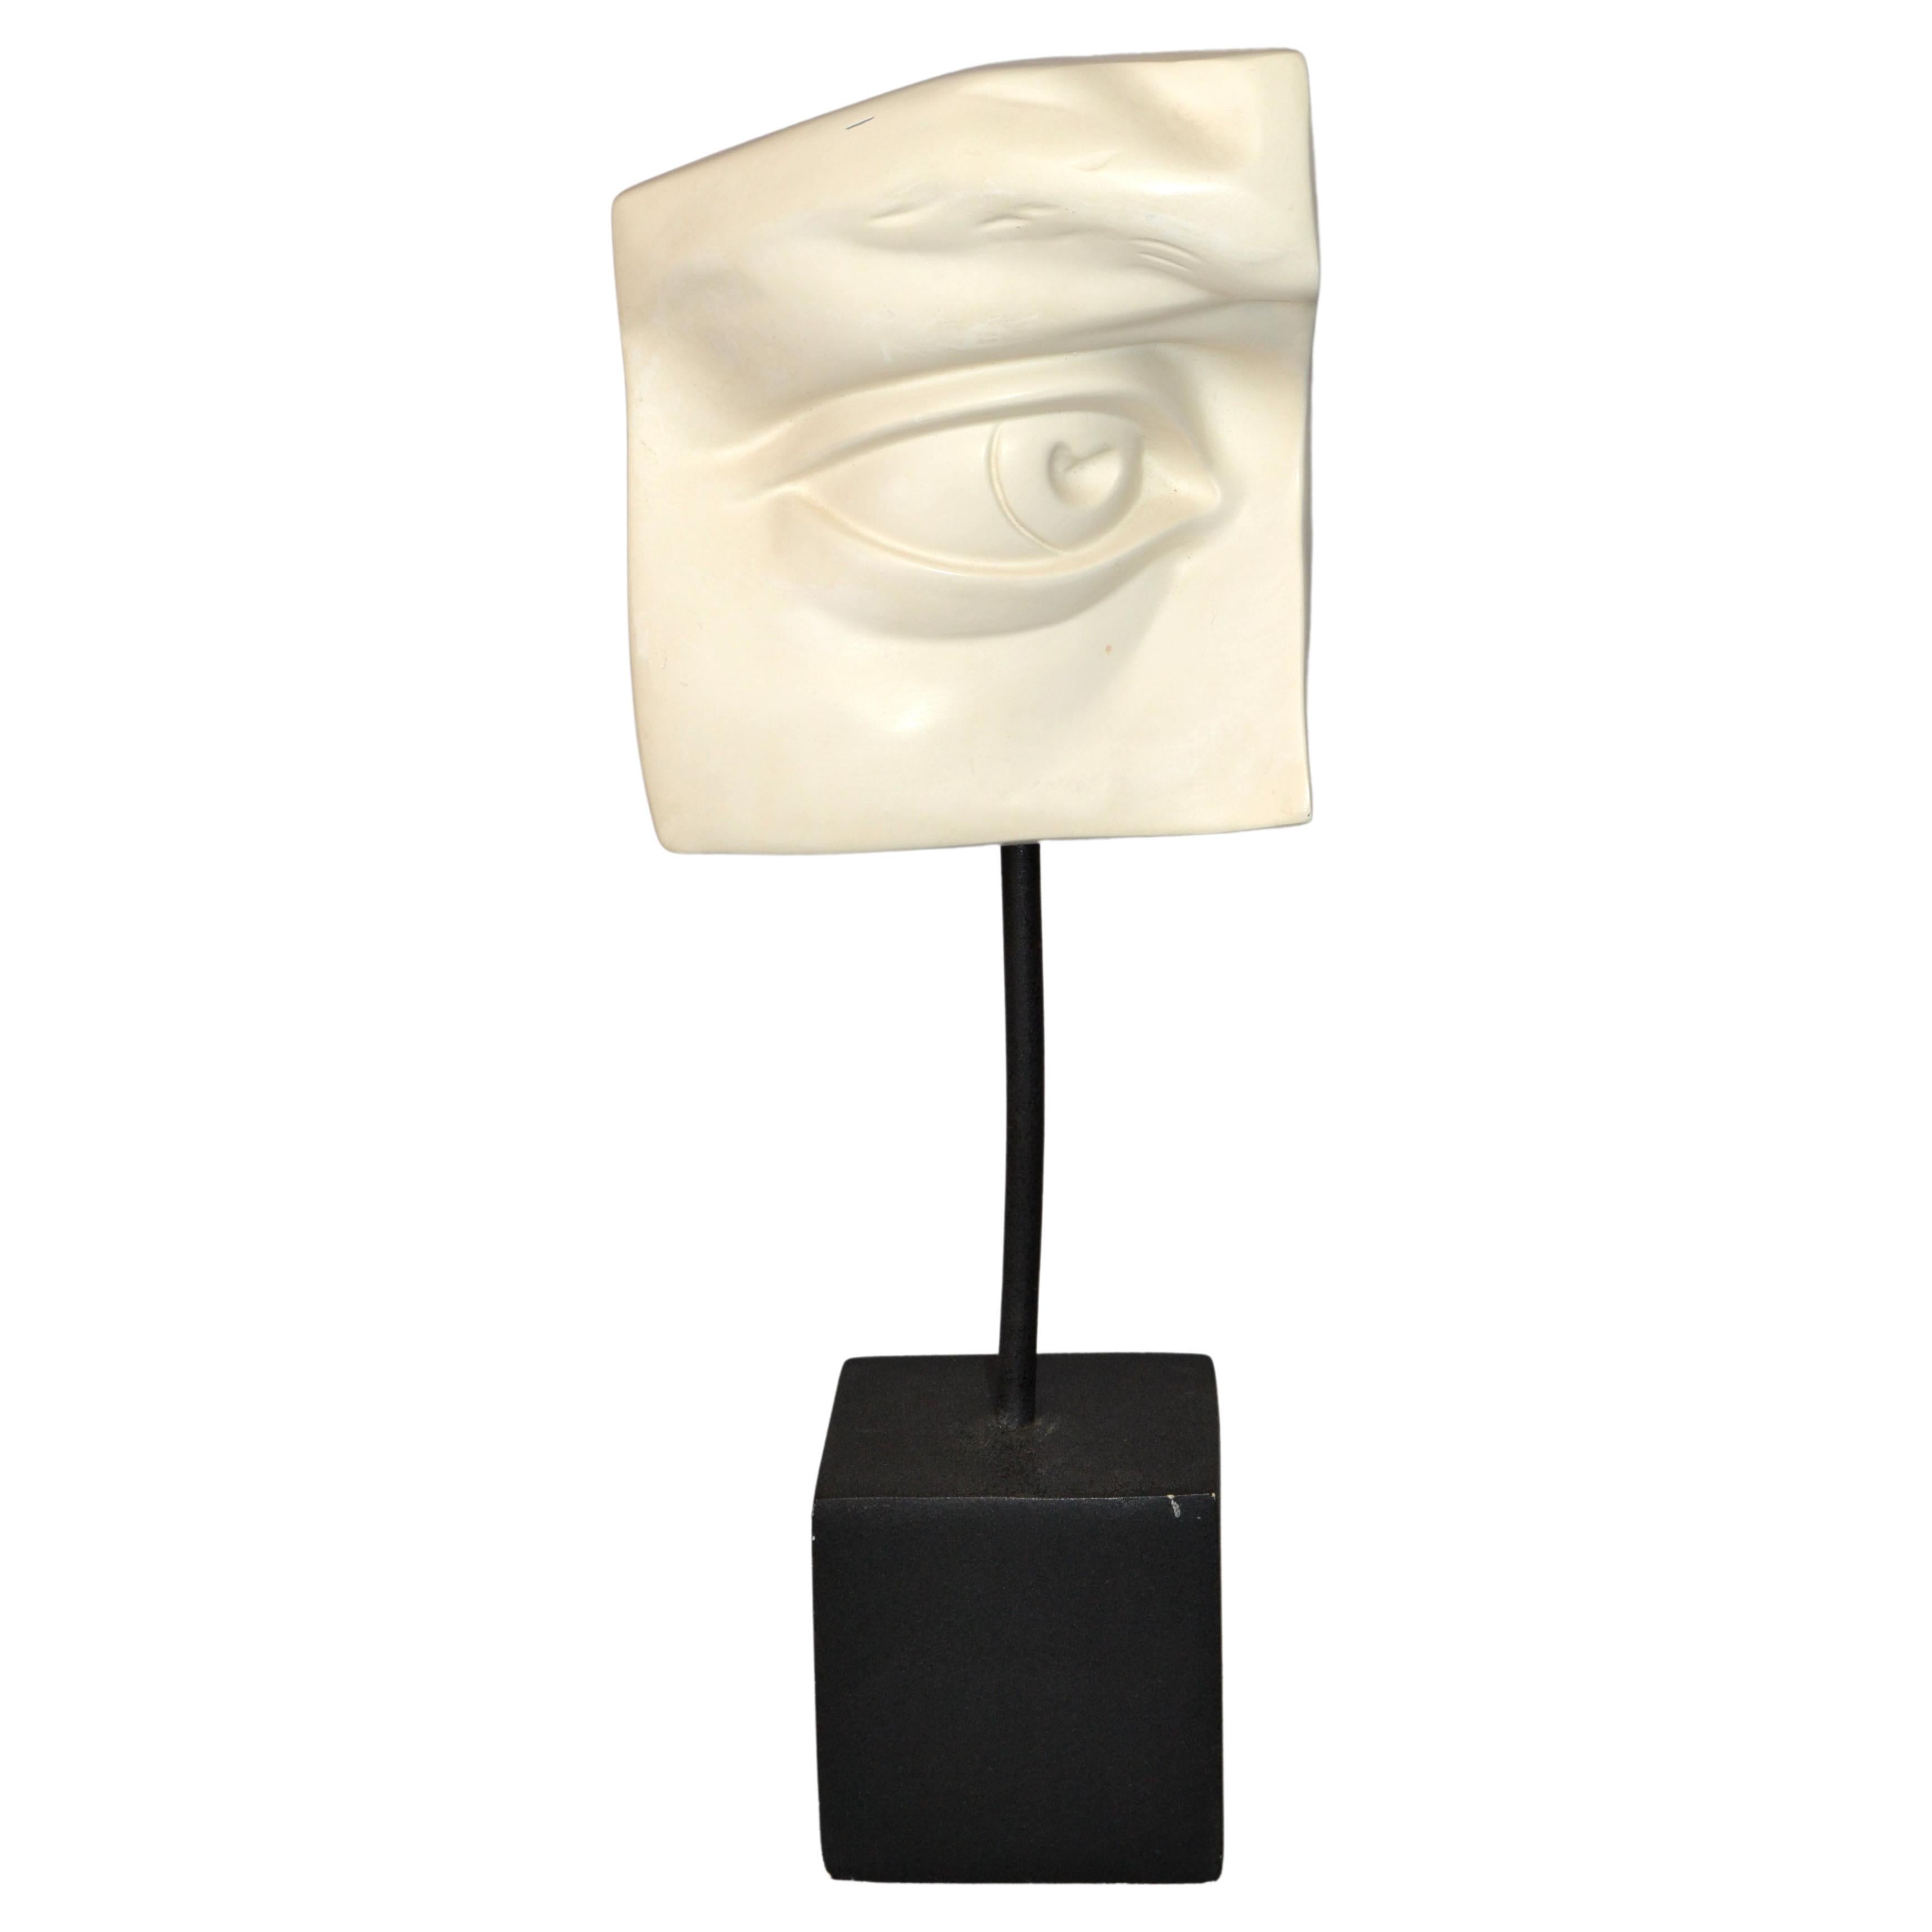 Missing Eye of David Sculpture plâtre sur bois Mid-Century Modern - Sculpture en plâtre noir et blanc